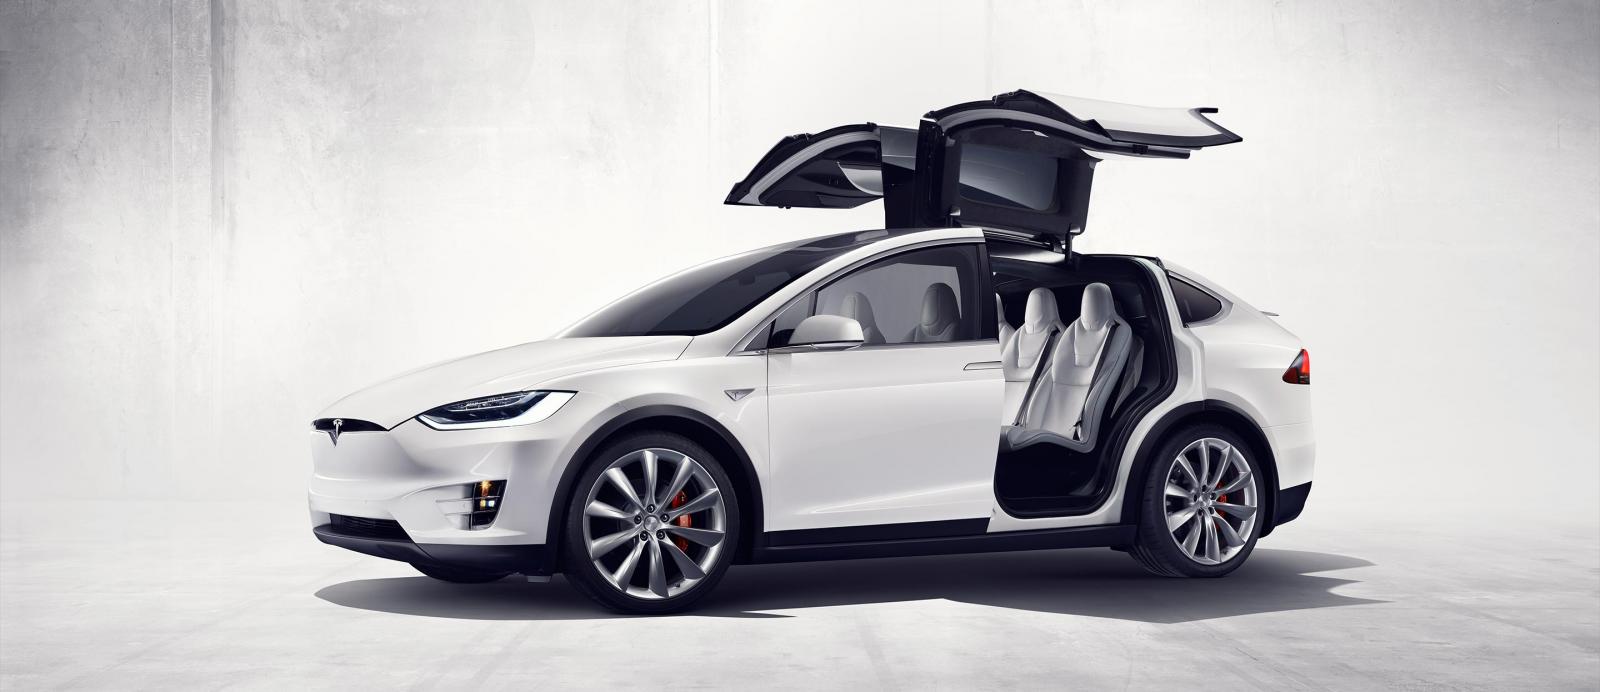 El Tesla Model X nos muestra su estilo en varios vídeos promocionales